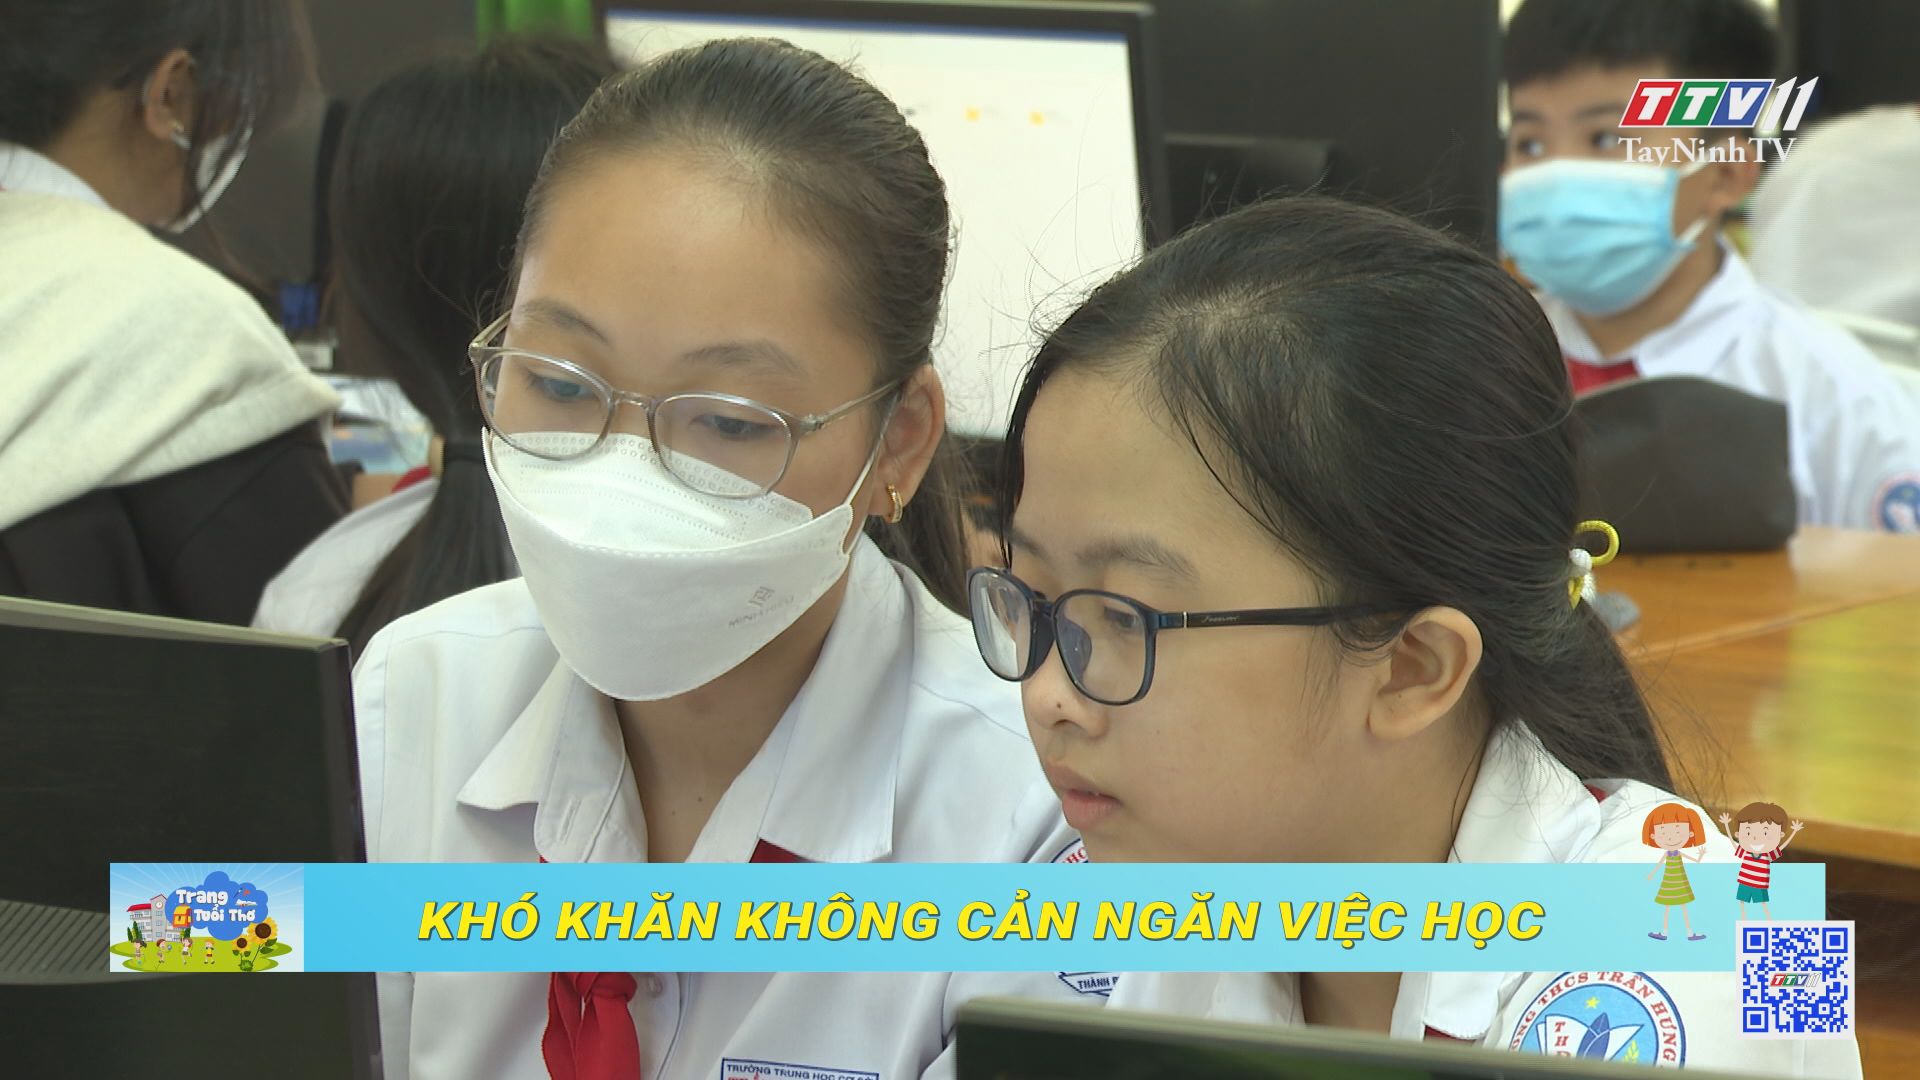 Khó khăn không ngăn việc học | Trang tuổi thơ | TayNinhTV